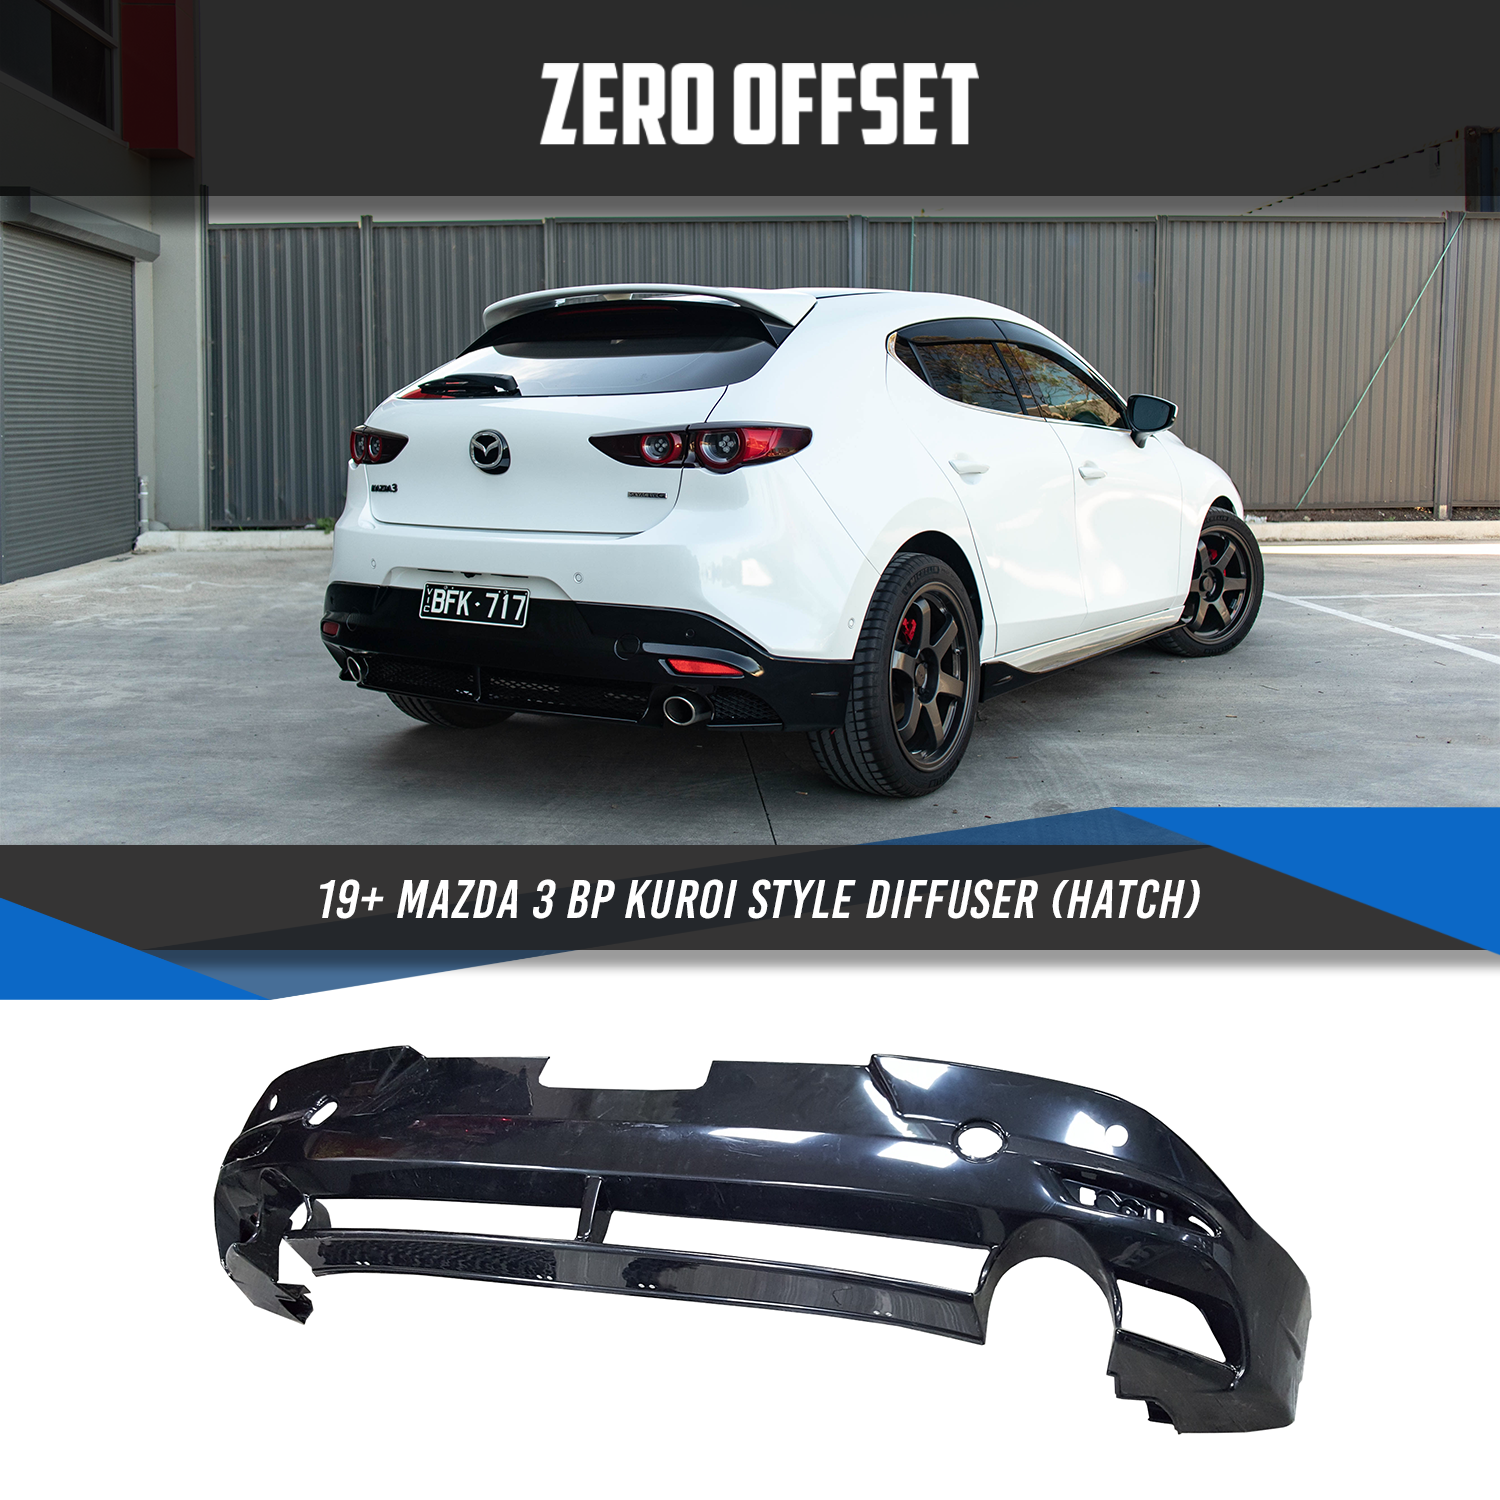 Zero Offset Kuroi Style Diffuser for 19+ Mazda 3 BP (Hatch)